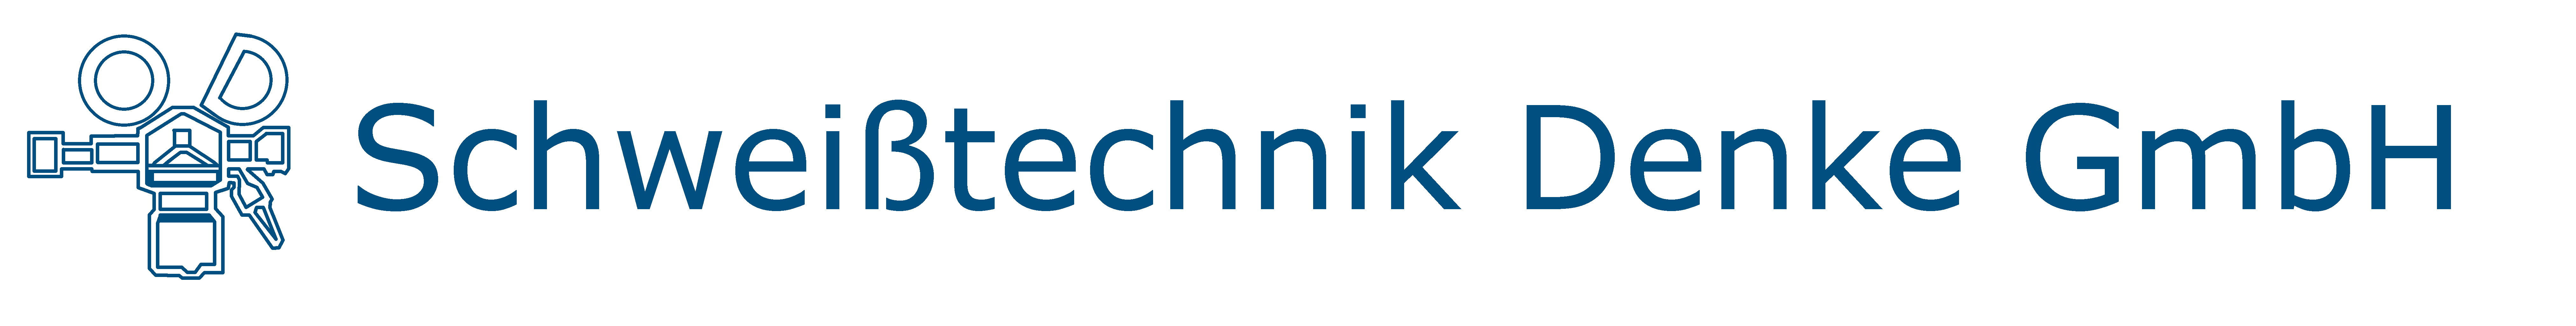 Schweißtechnik Denke GmbH